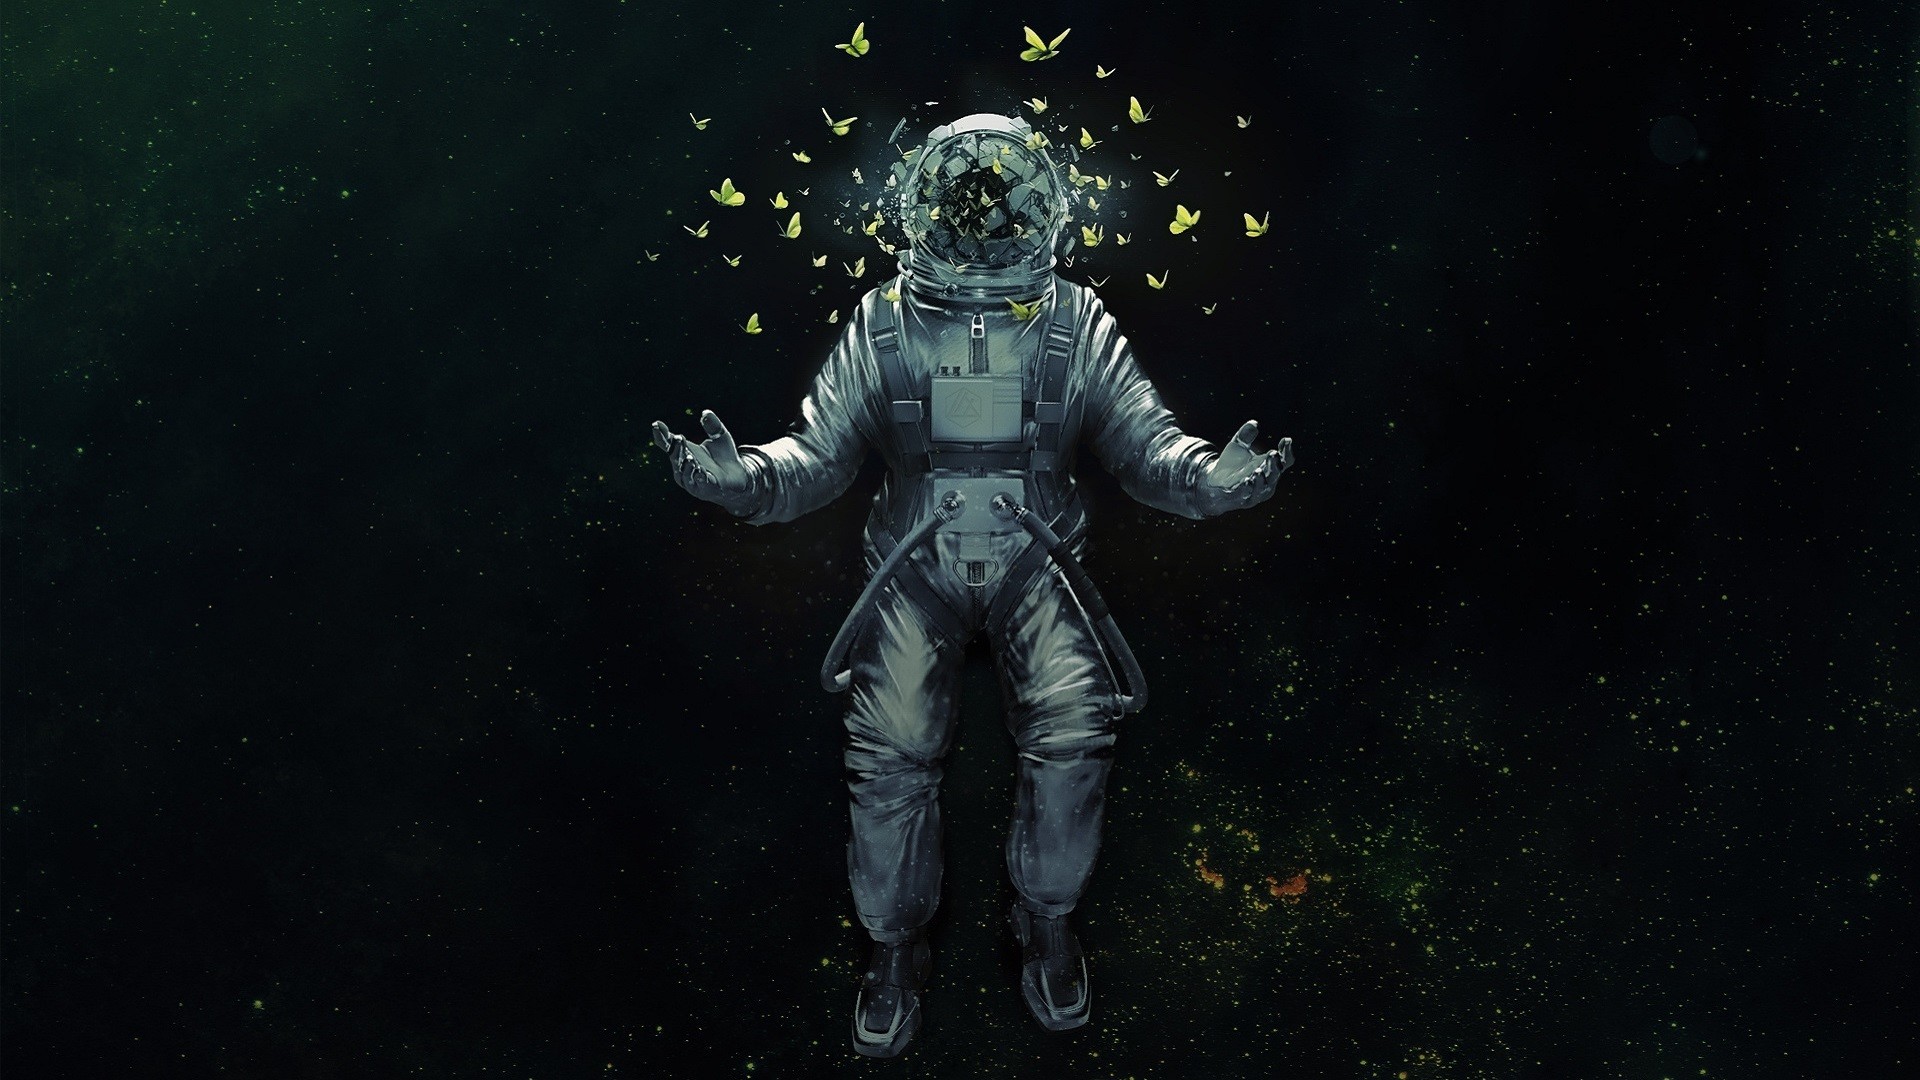 Wallpaper Astronaut, broken helmet, butterfly, space suit, fantasy, art